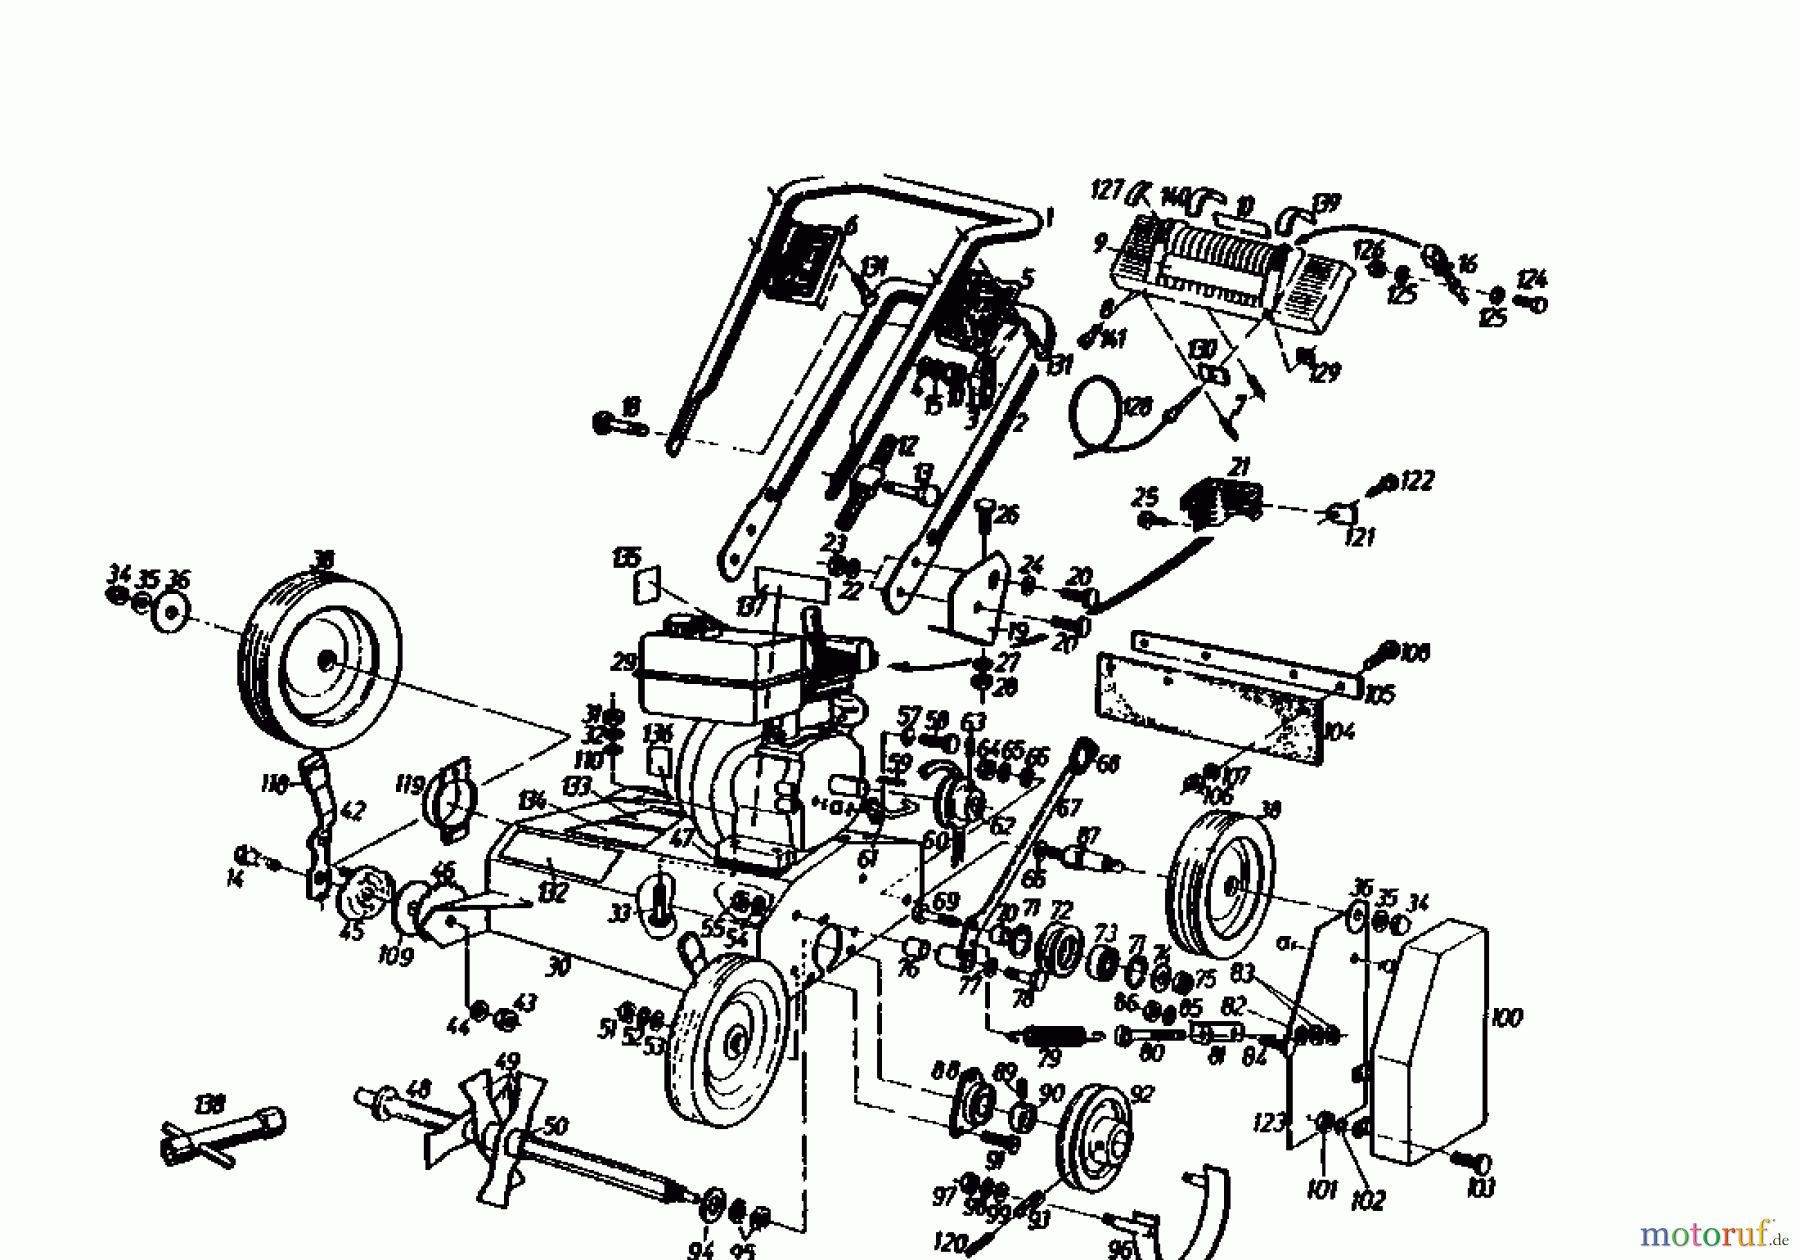  Gutbrod Motorvertikutierer MV 504 00053.03  (1991) Grundgerät